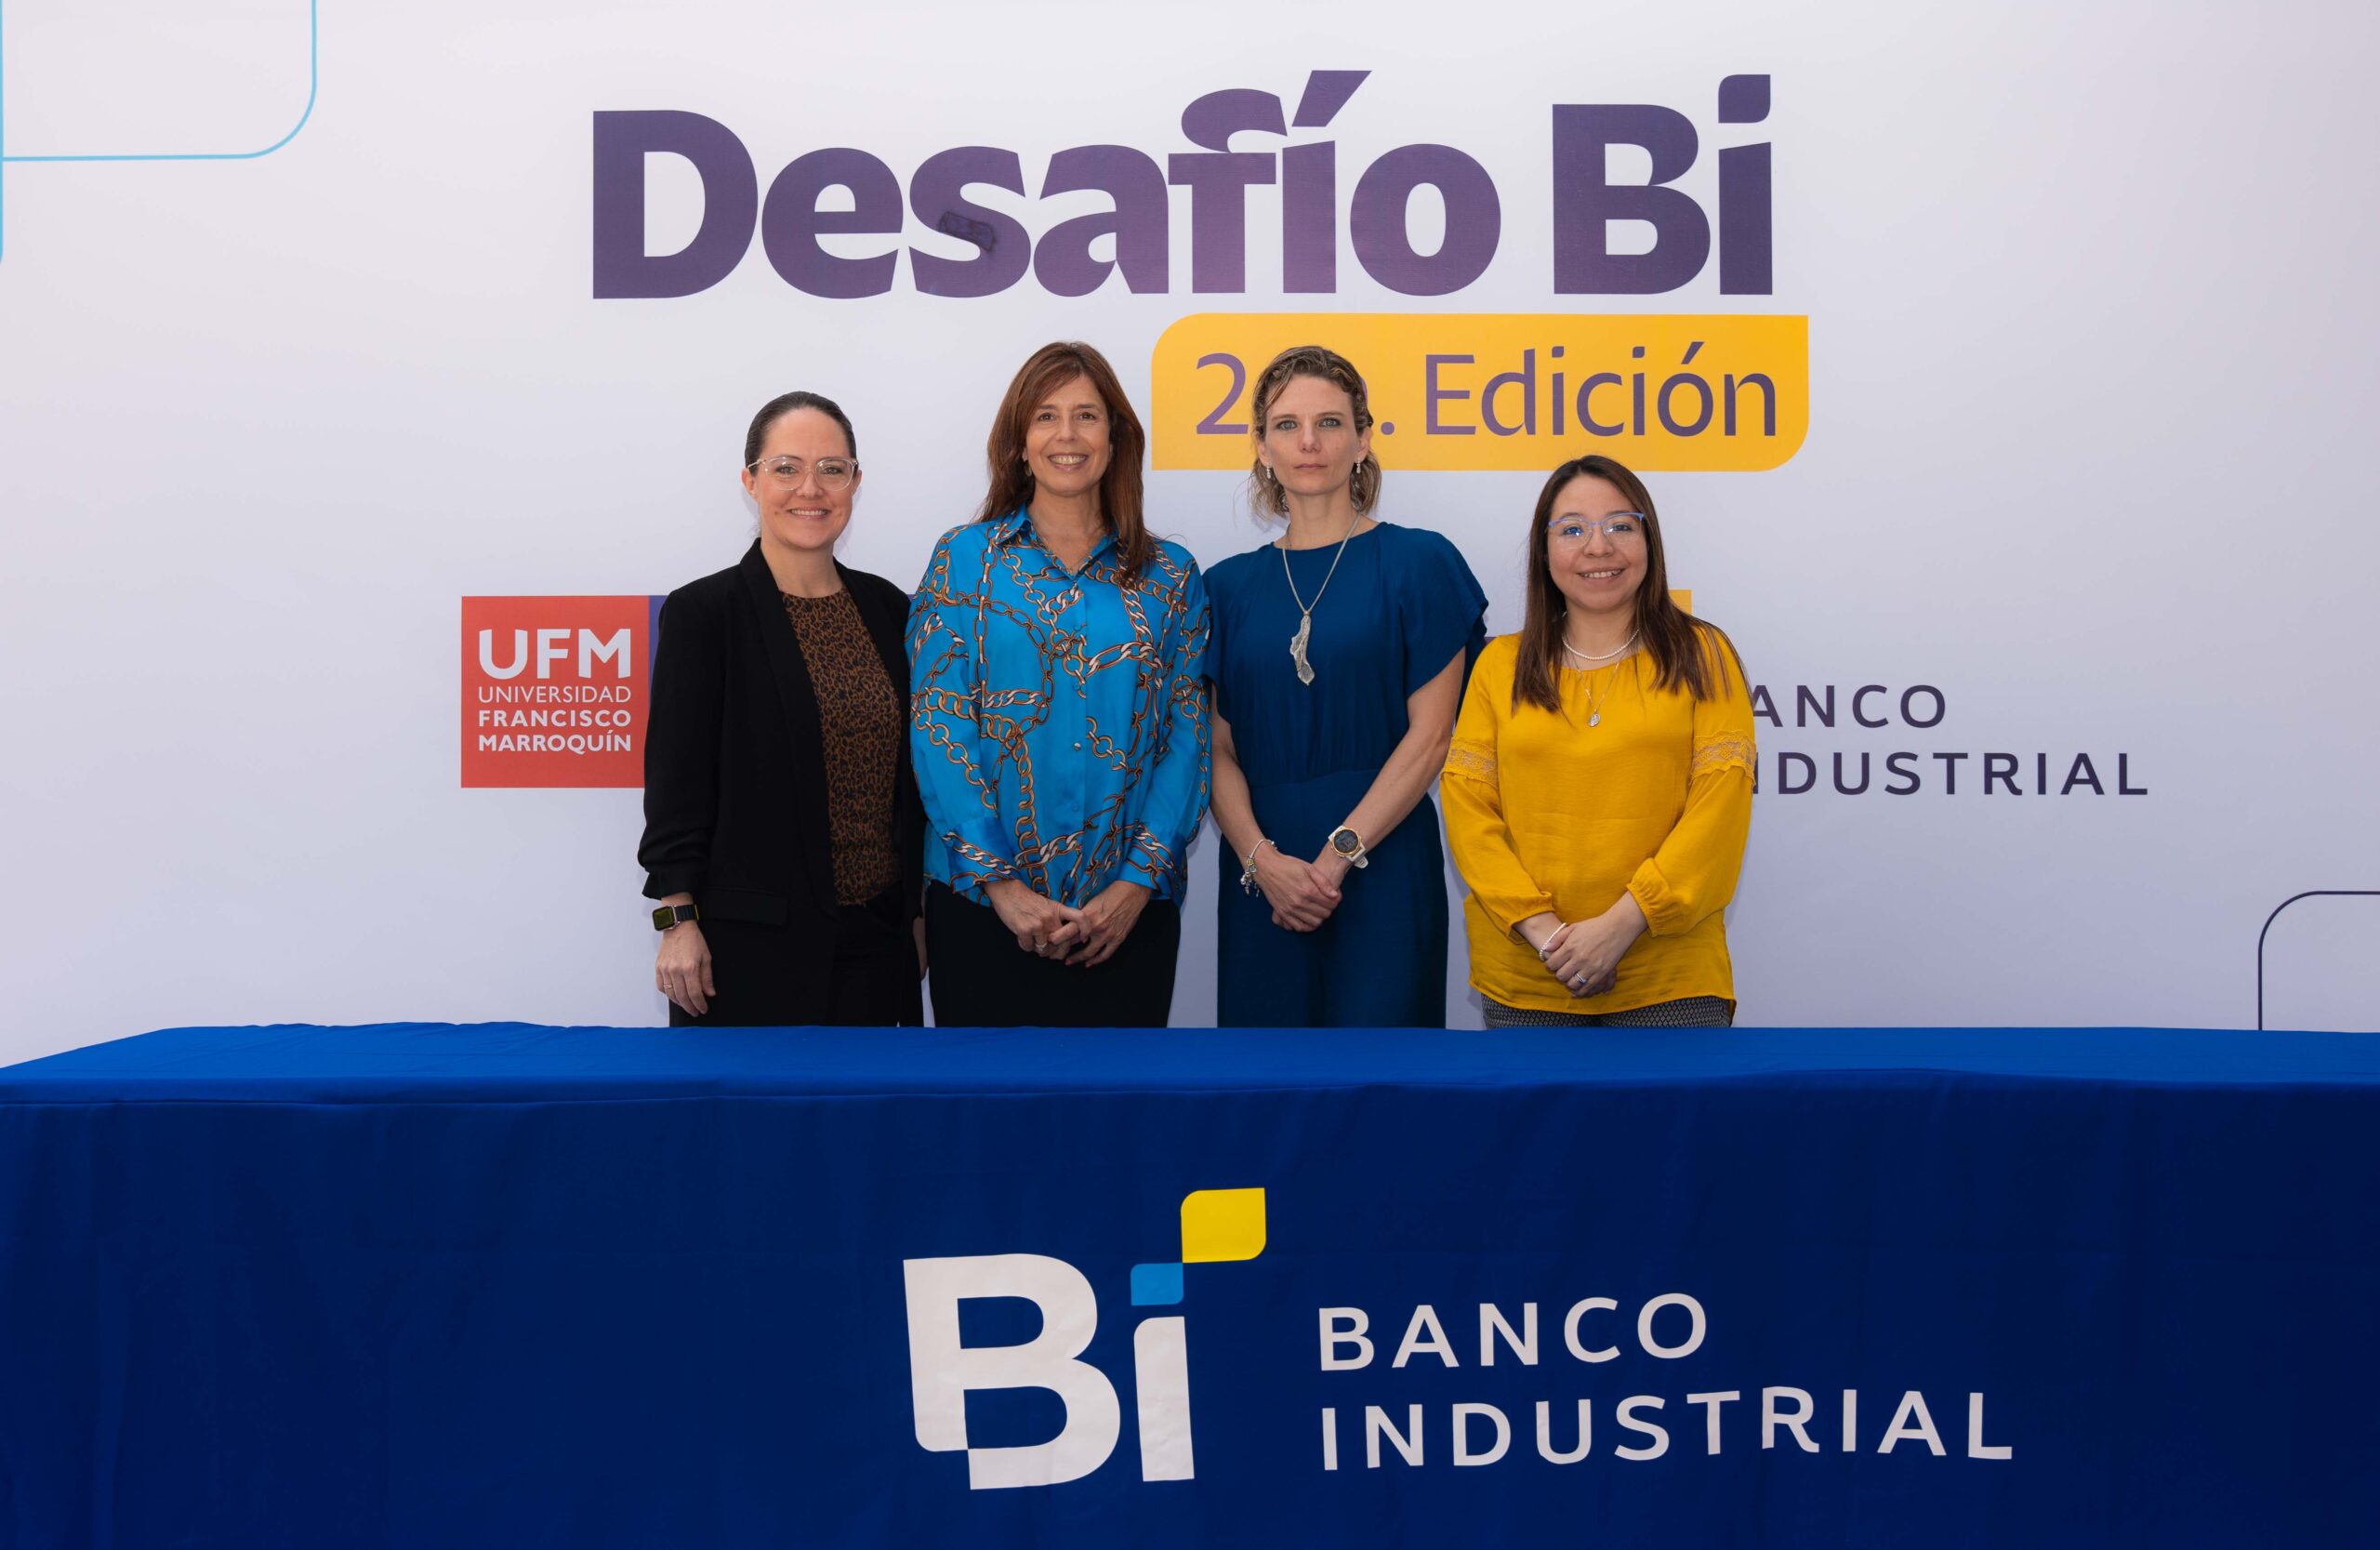 Banco Industrial y la Universidad Francisco Marroquín se unen para crear Desafío Bi, un concurso para impulsar el ecosistema emprendedor guatemalteco.